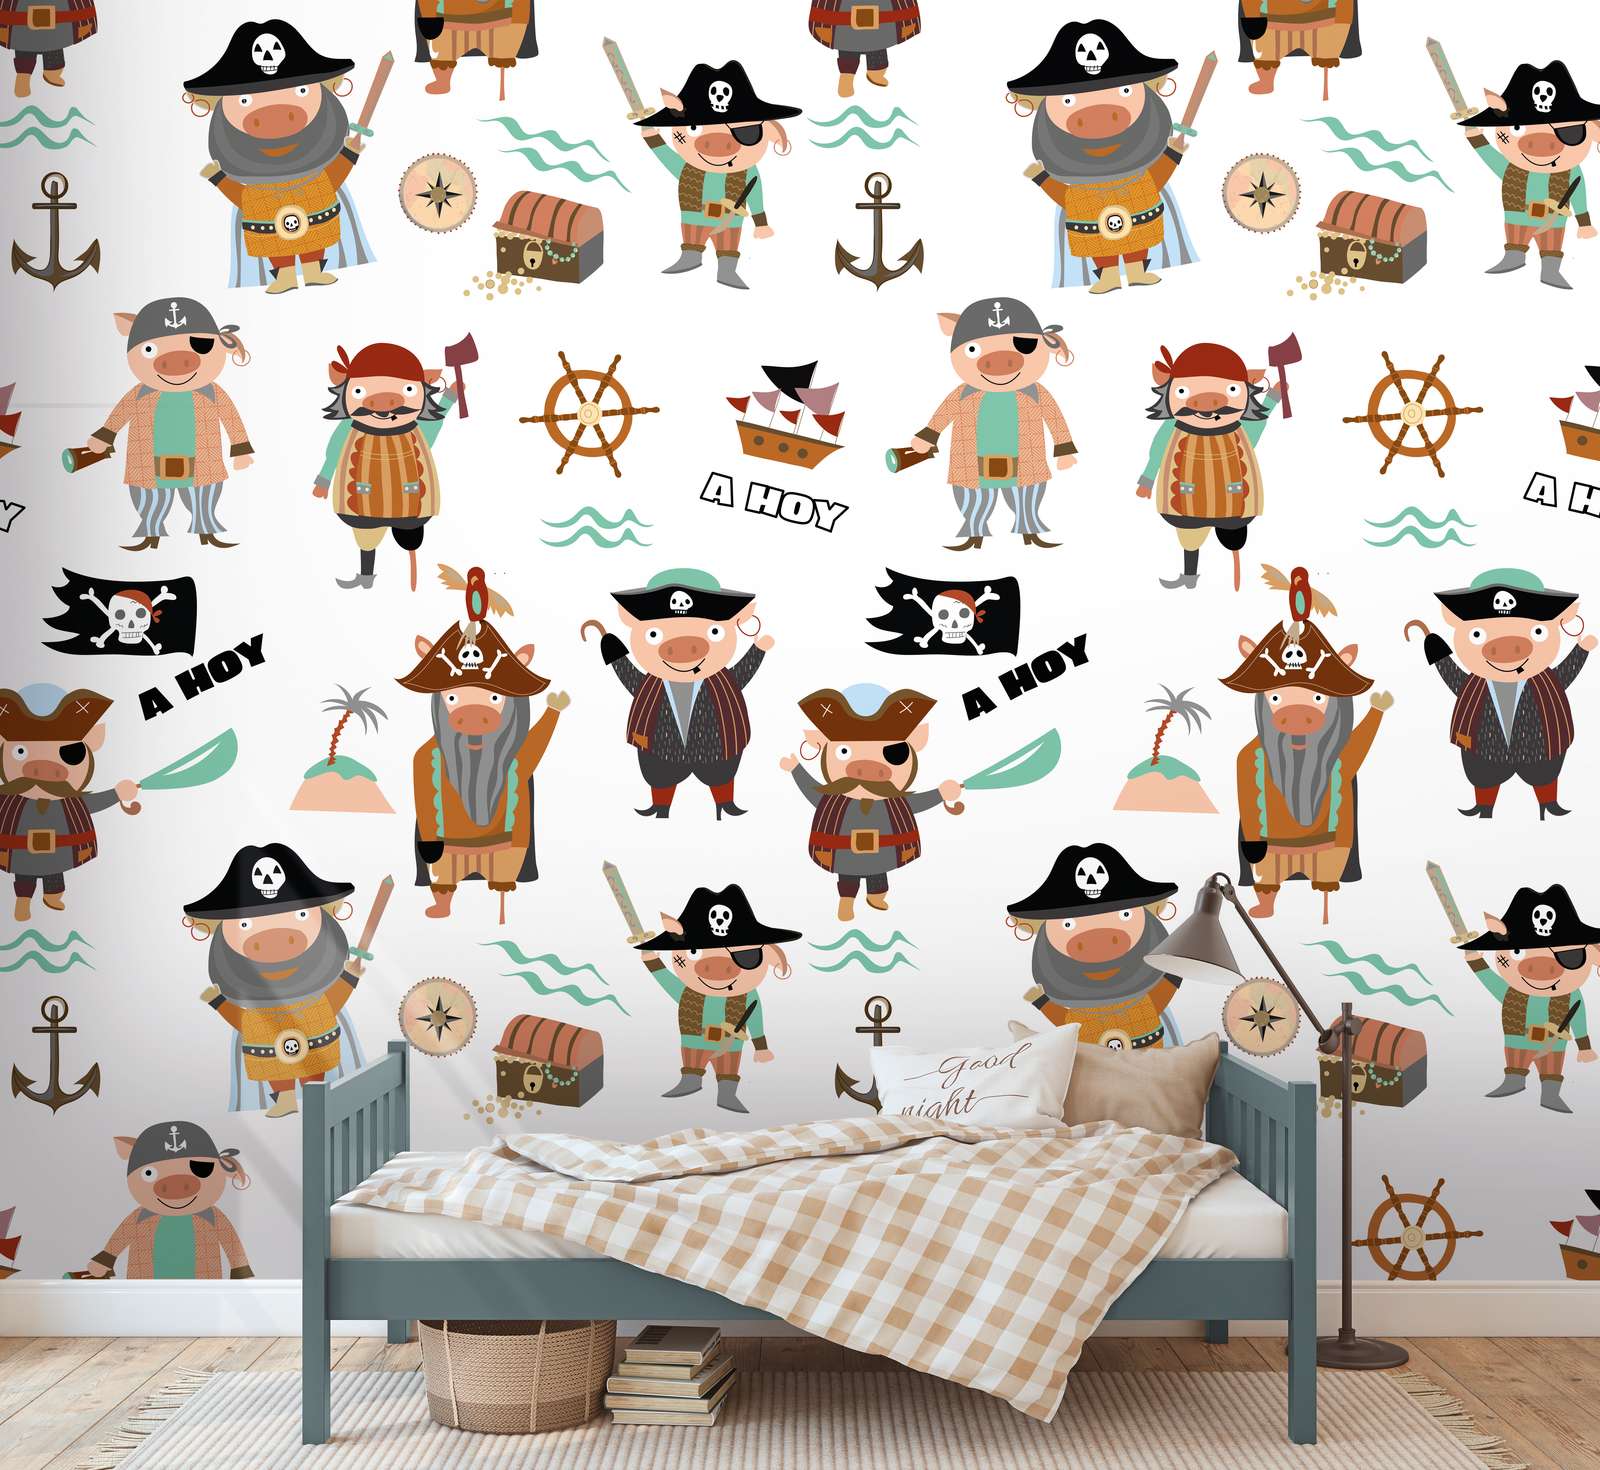             Papier peint enfant avec différents pirates et symboles - multicolore, crème, marron
        